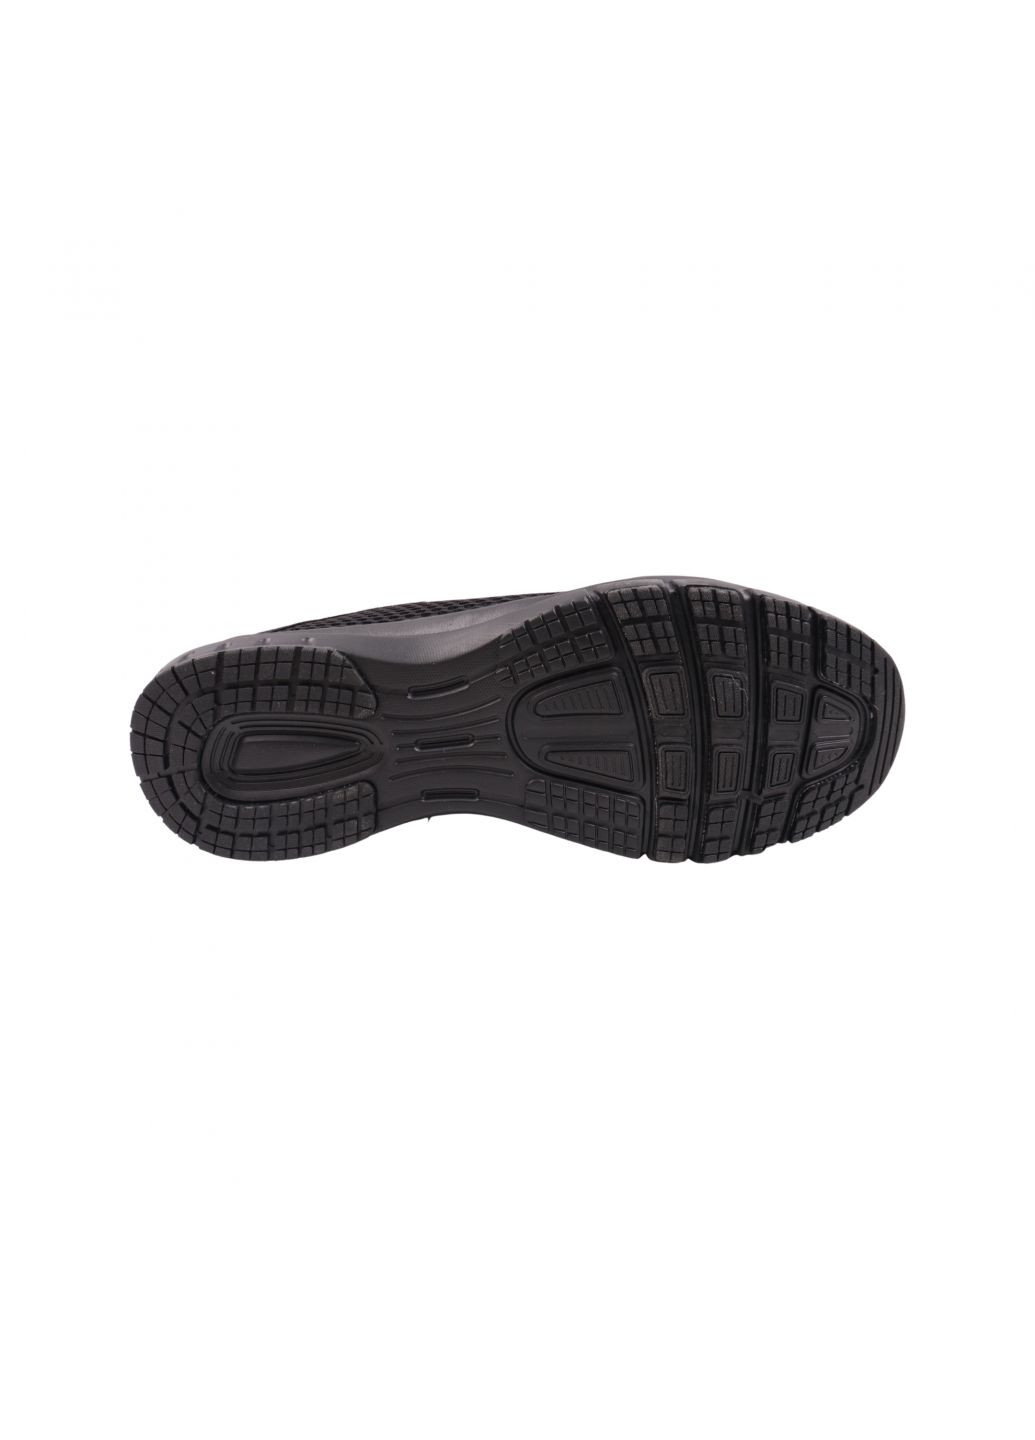 Черные кроссовки мужские черные текстиль Restime 224-23LK